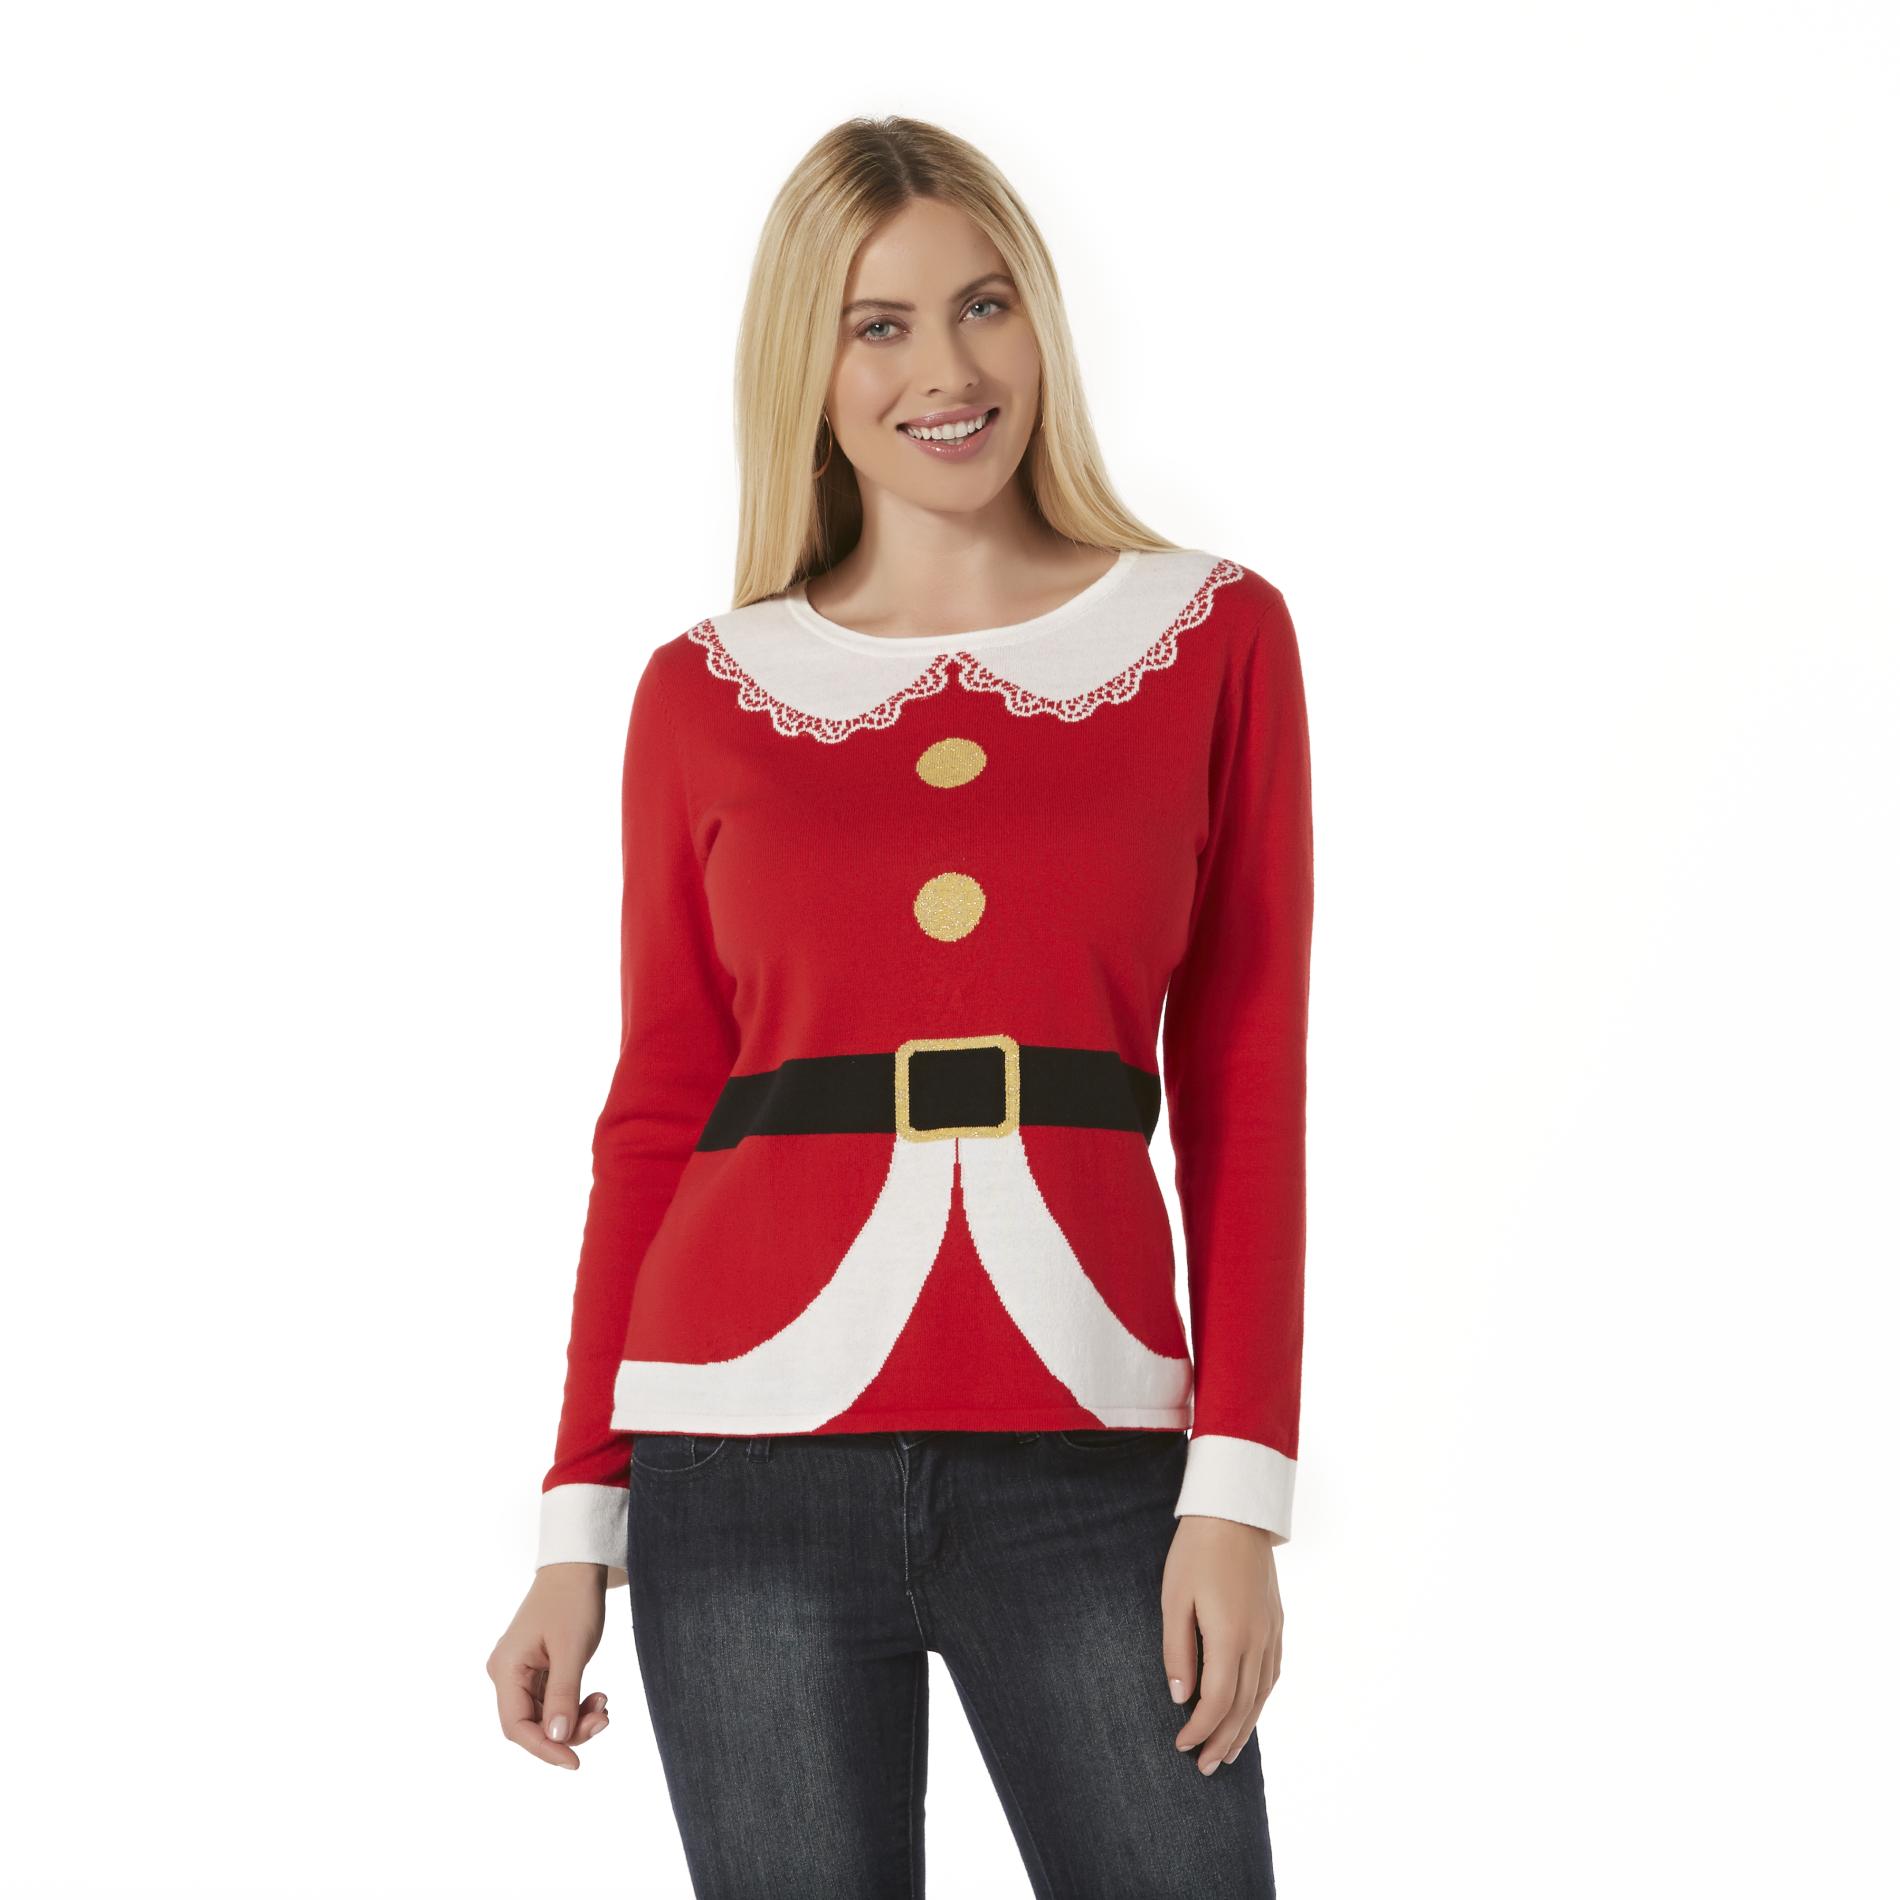 Nouveaux Women's Christmas Sweater - Mrs. Claus